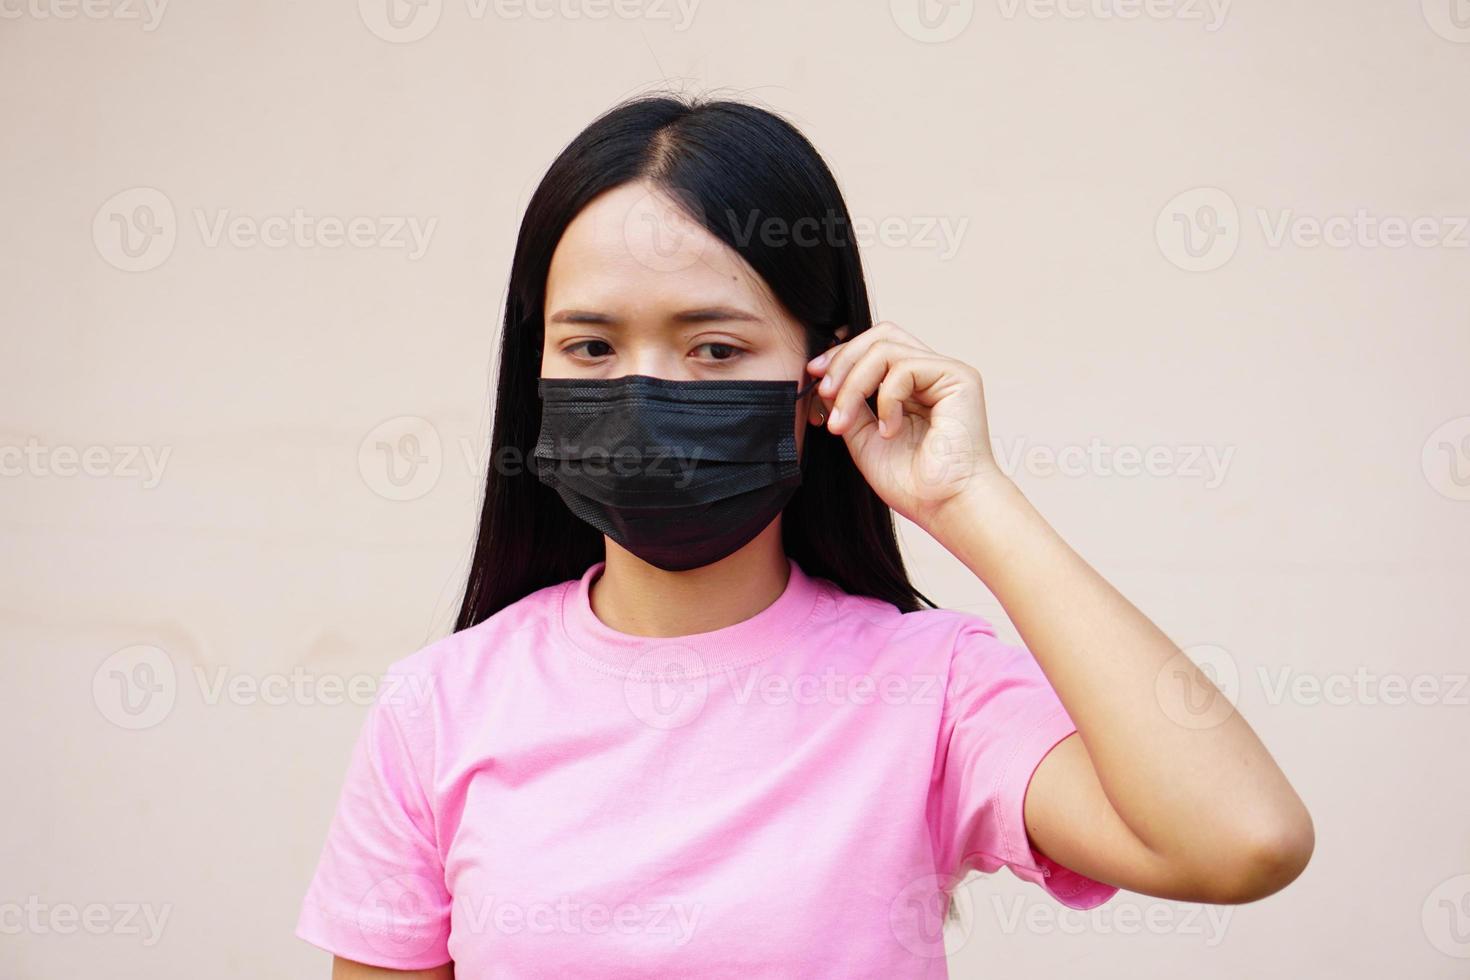 sian vrouwen die maskers dragen om het virus covid 19 te voorkomen foto